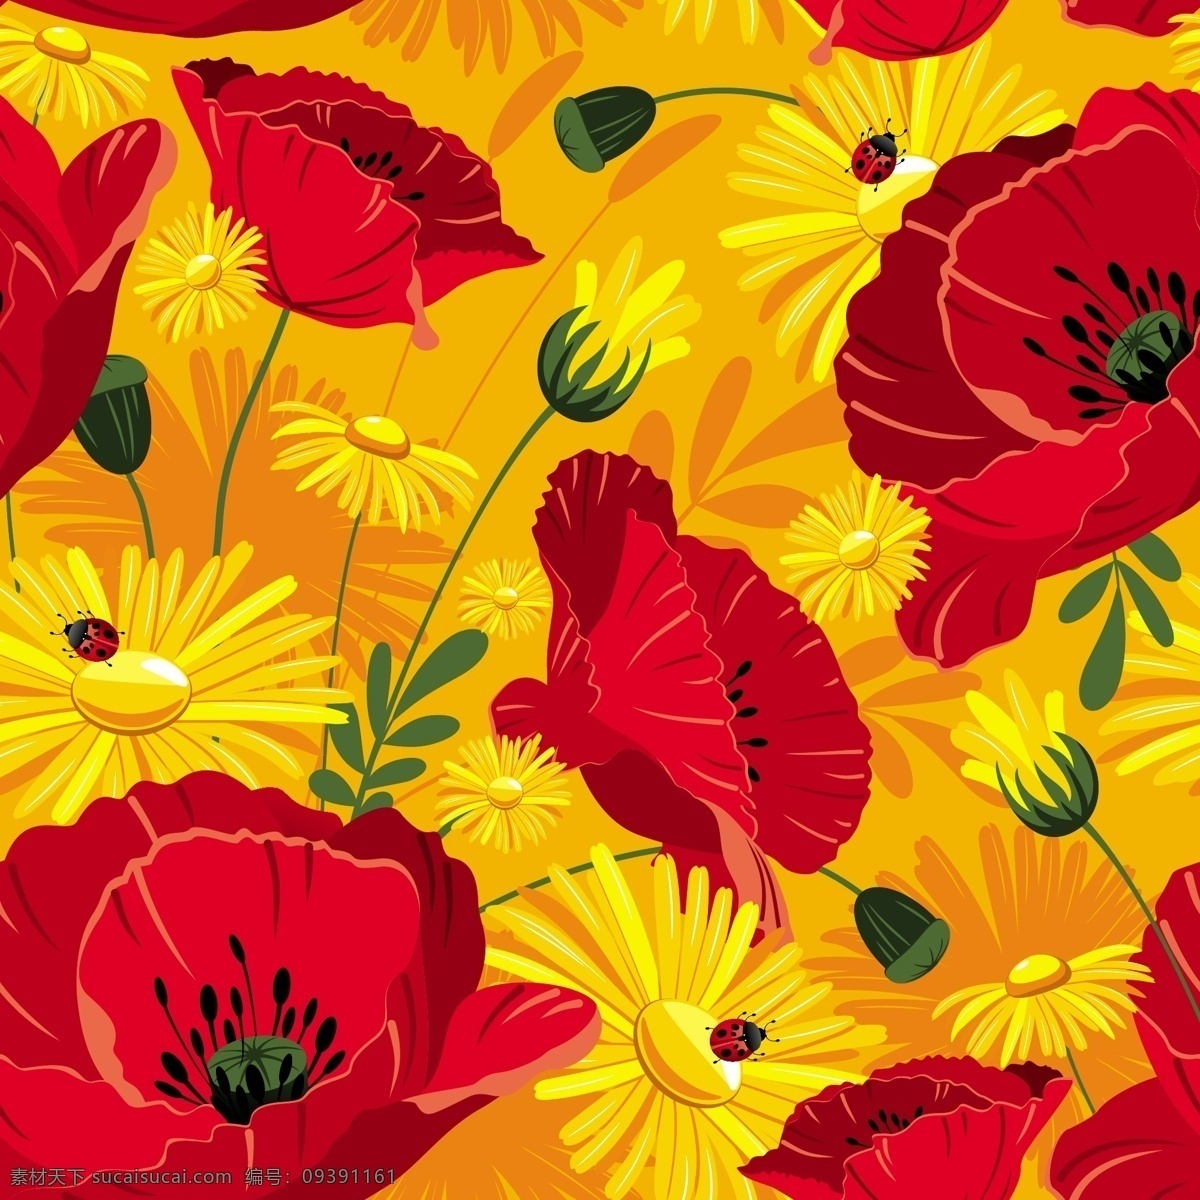 红色 系 漂亮 花朵 背景 时尚 矢量素材 矢量图 花纹花边